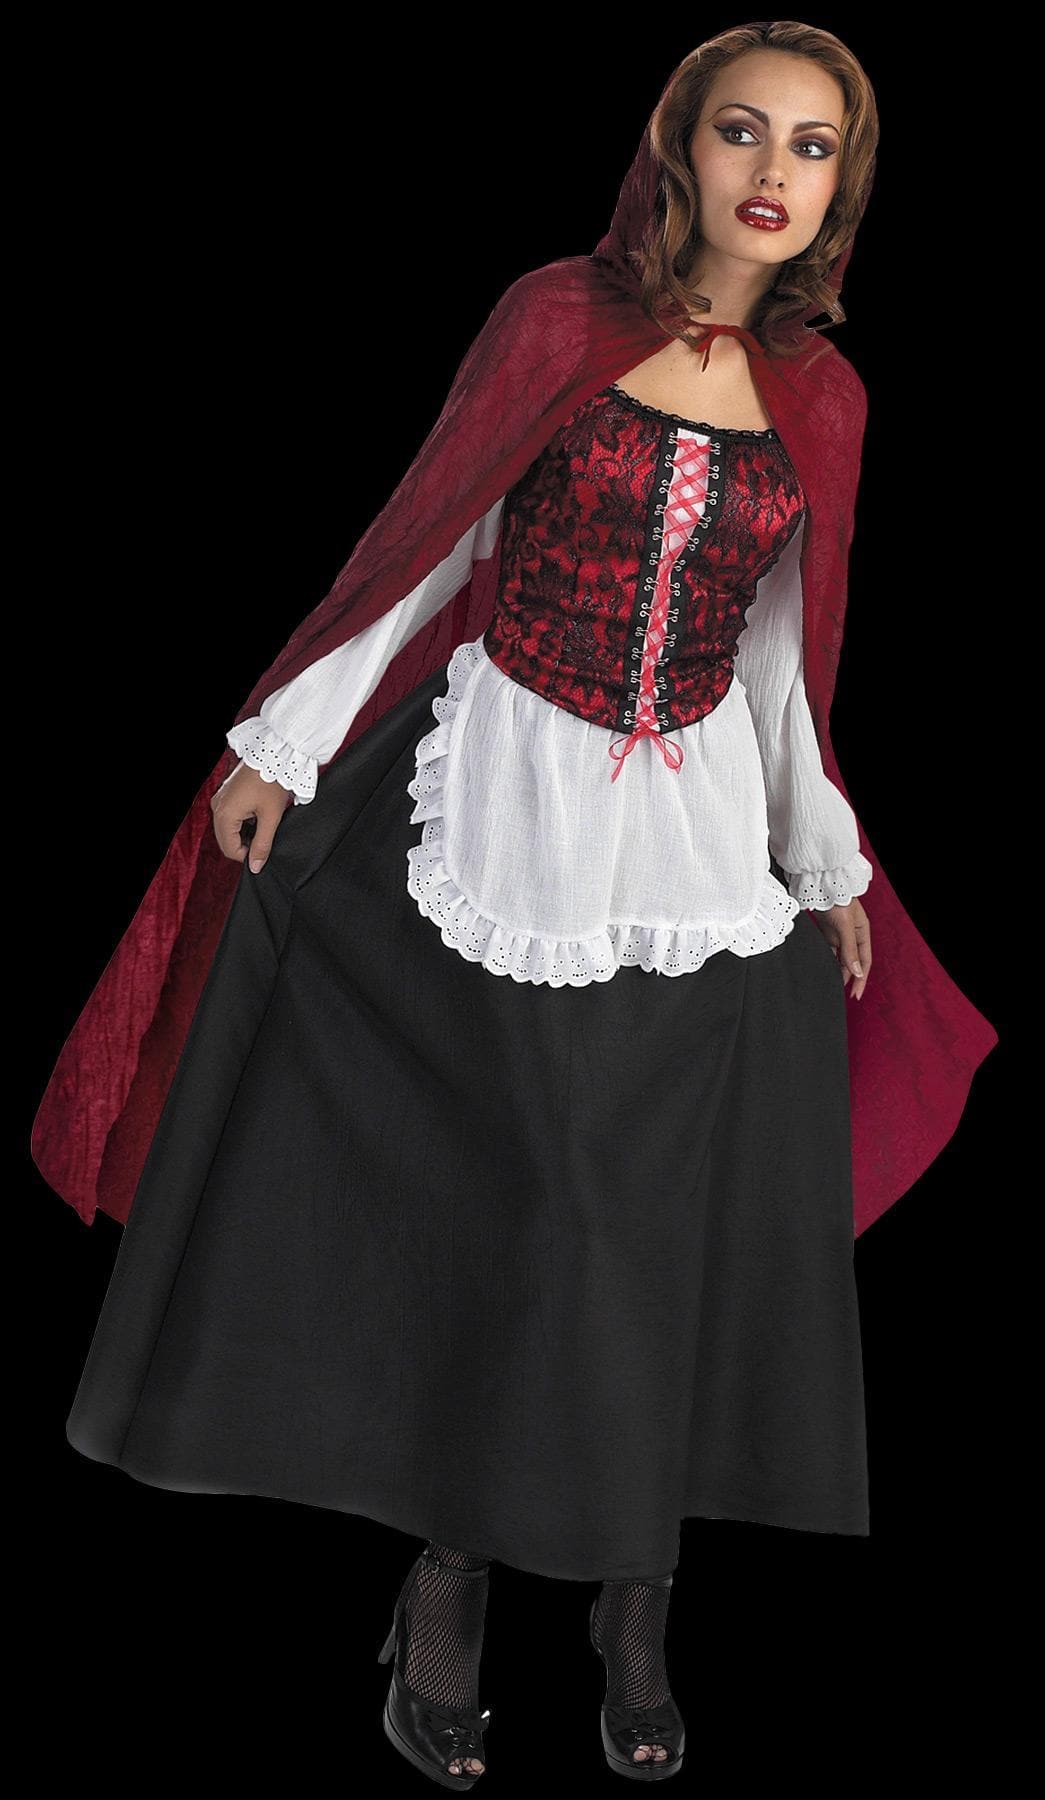 "Red Riding Hood" Deluxe Women's Halloween Costume